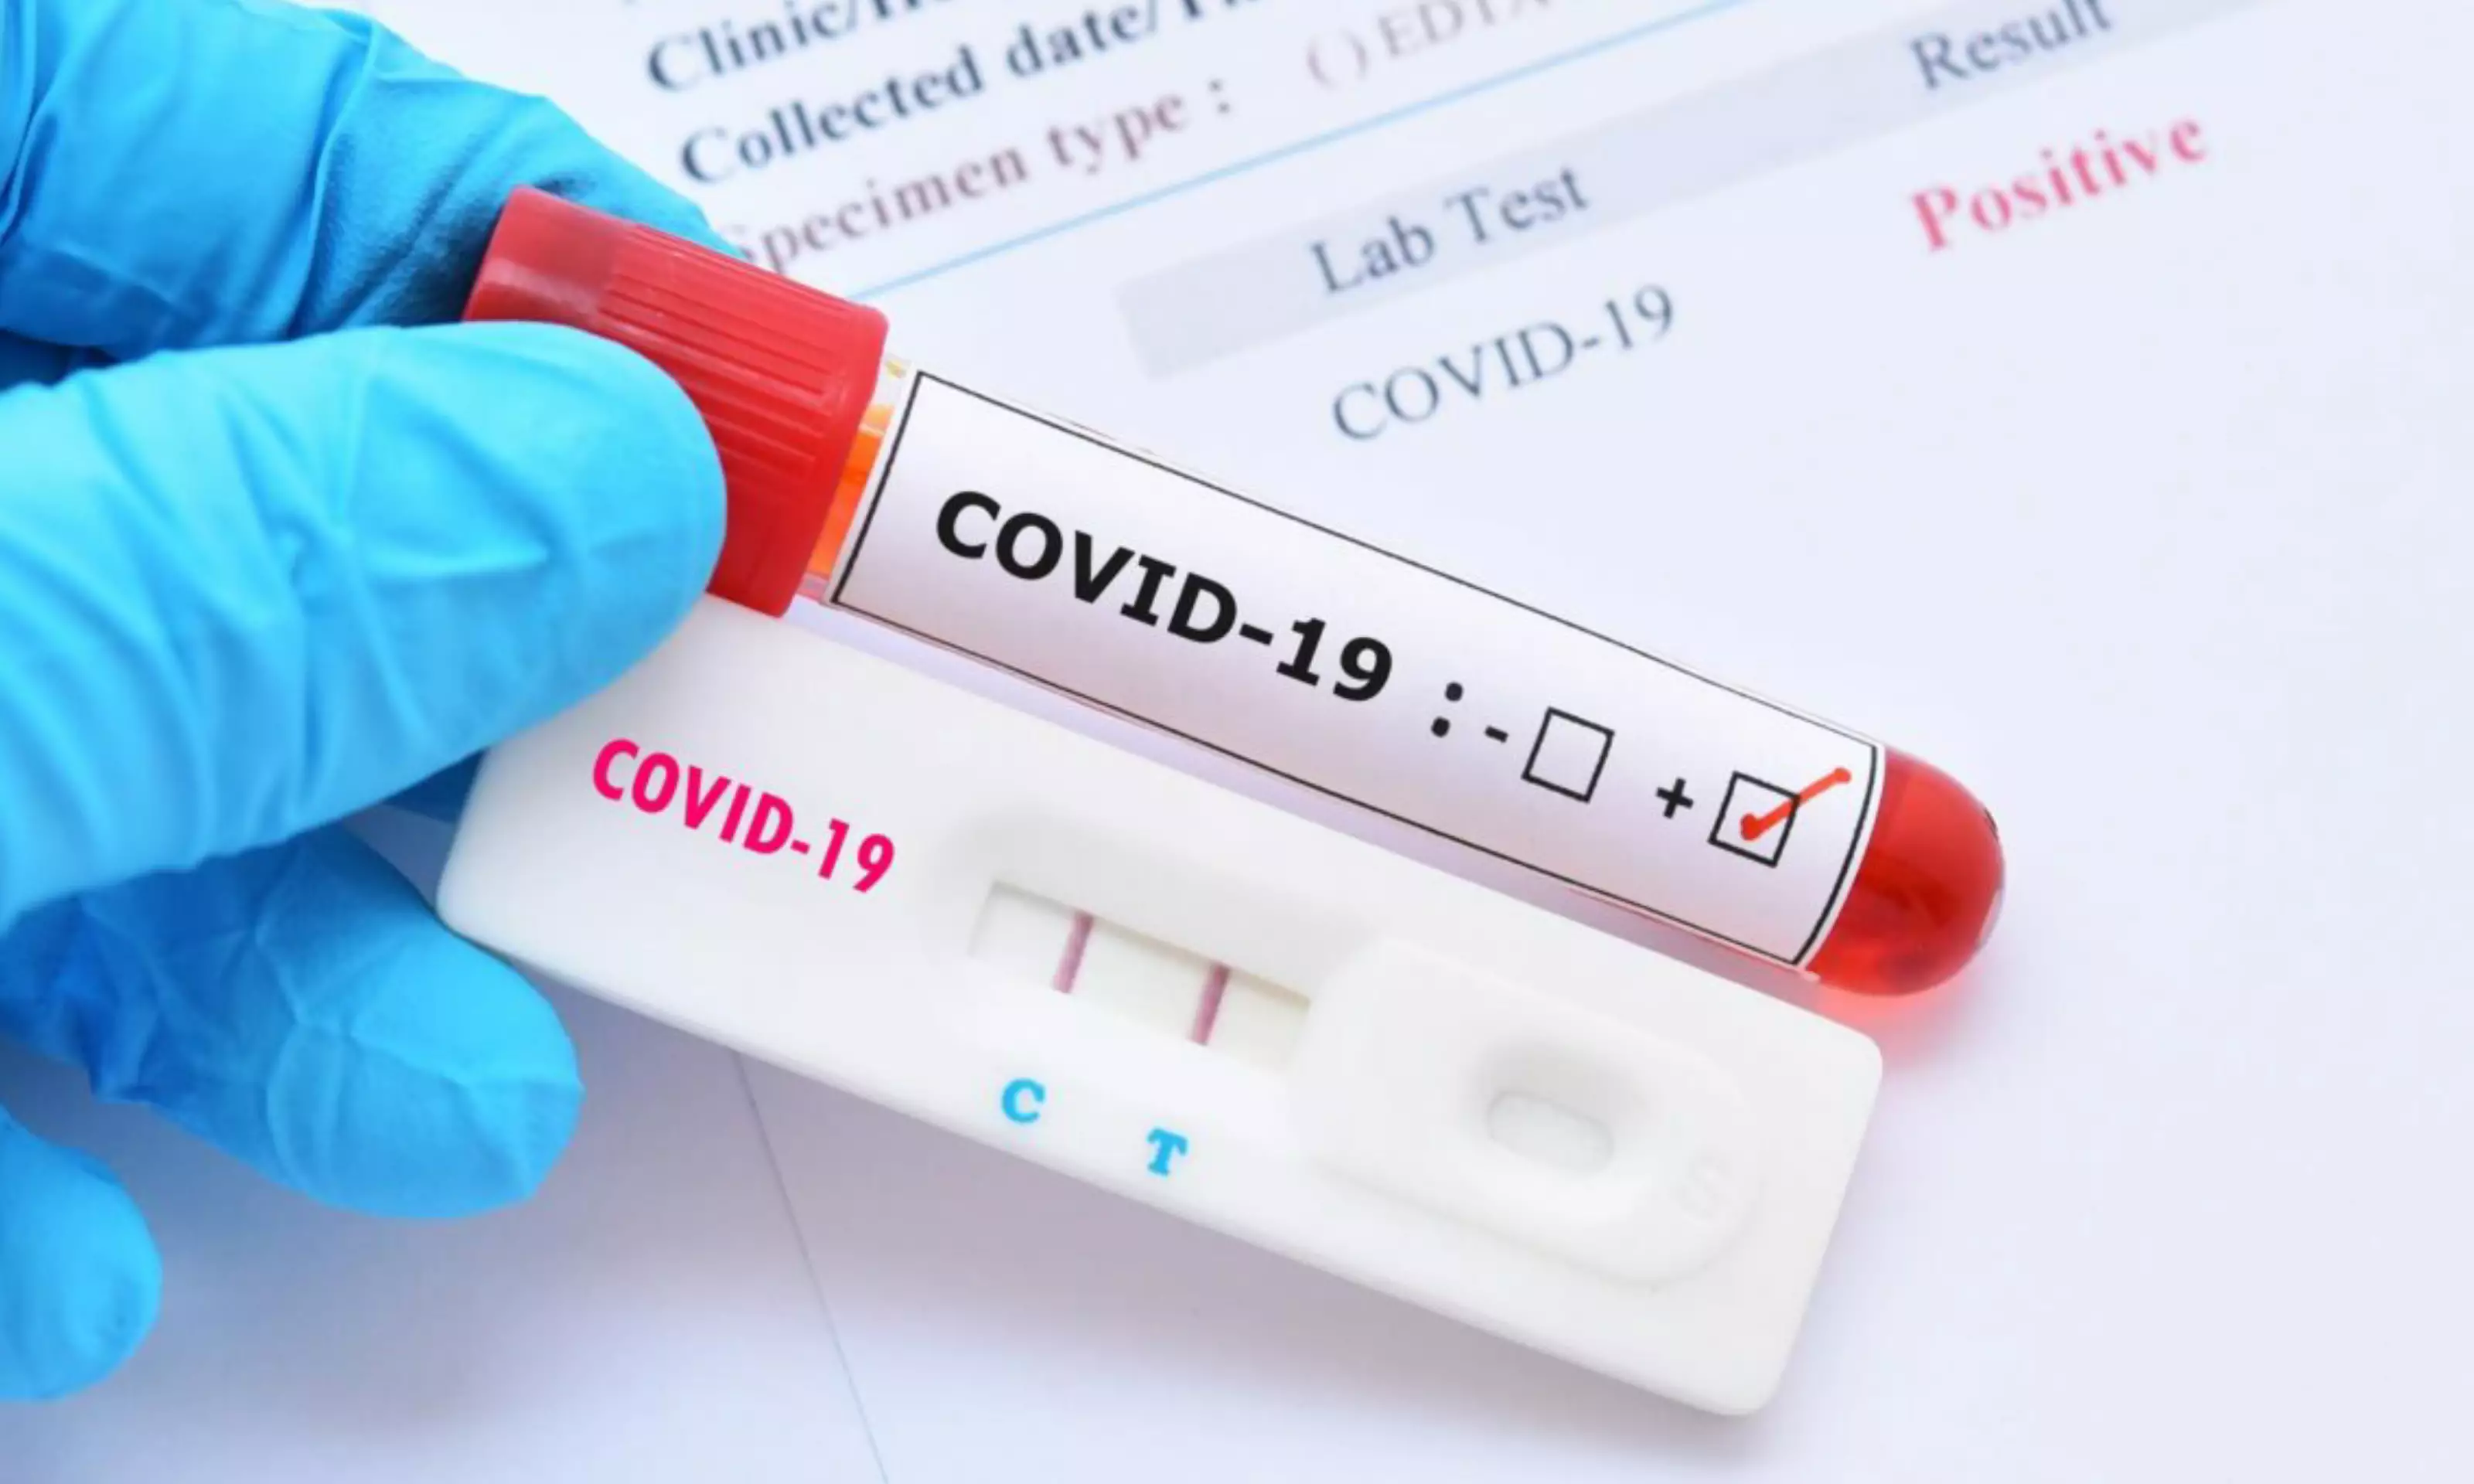 Ölkədə neçə koronavirus xəstəsi var?